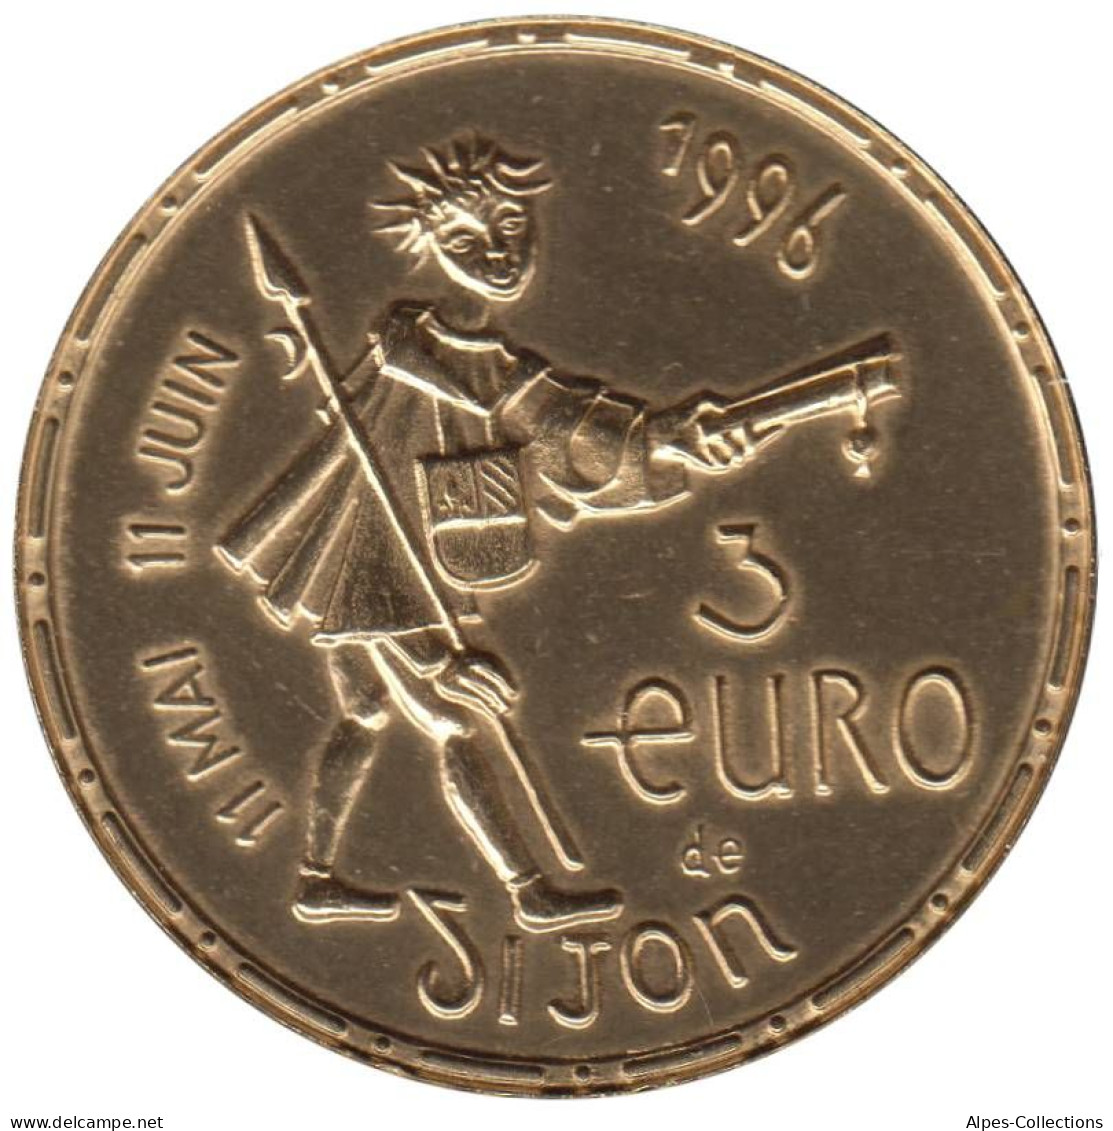 DIJON - EU0030.1 - 3 EURO DES VILLES - Réf: NR - 1996 - Euros Of The Cities